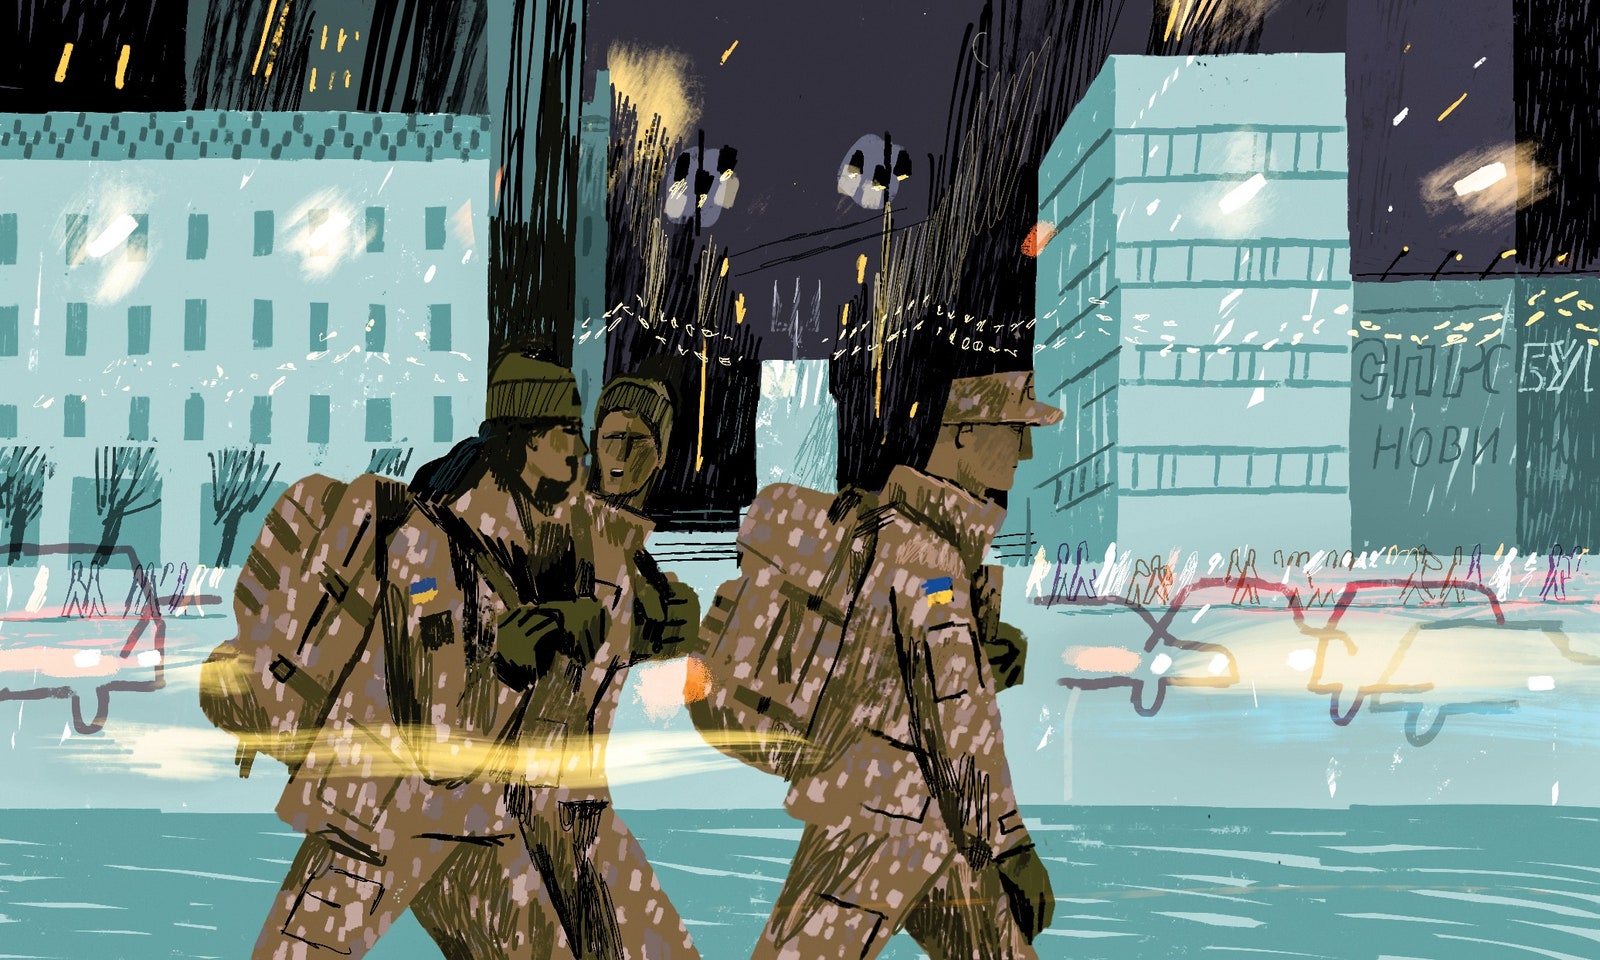 Сергей Майдуков создал иллюстрации для The New Yorker, отображающие Киев во время военной угрозы